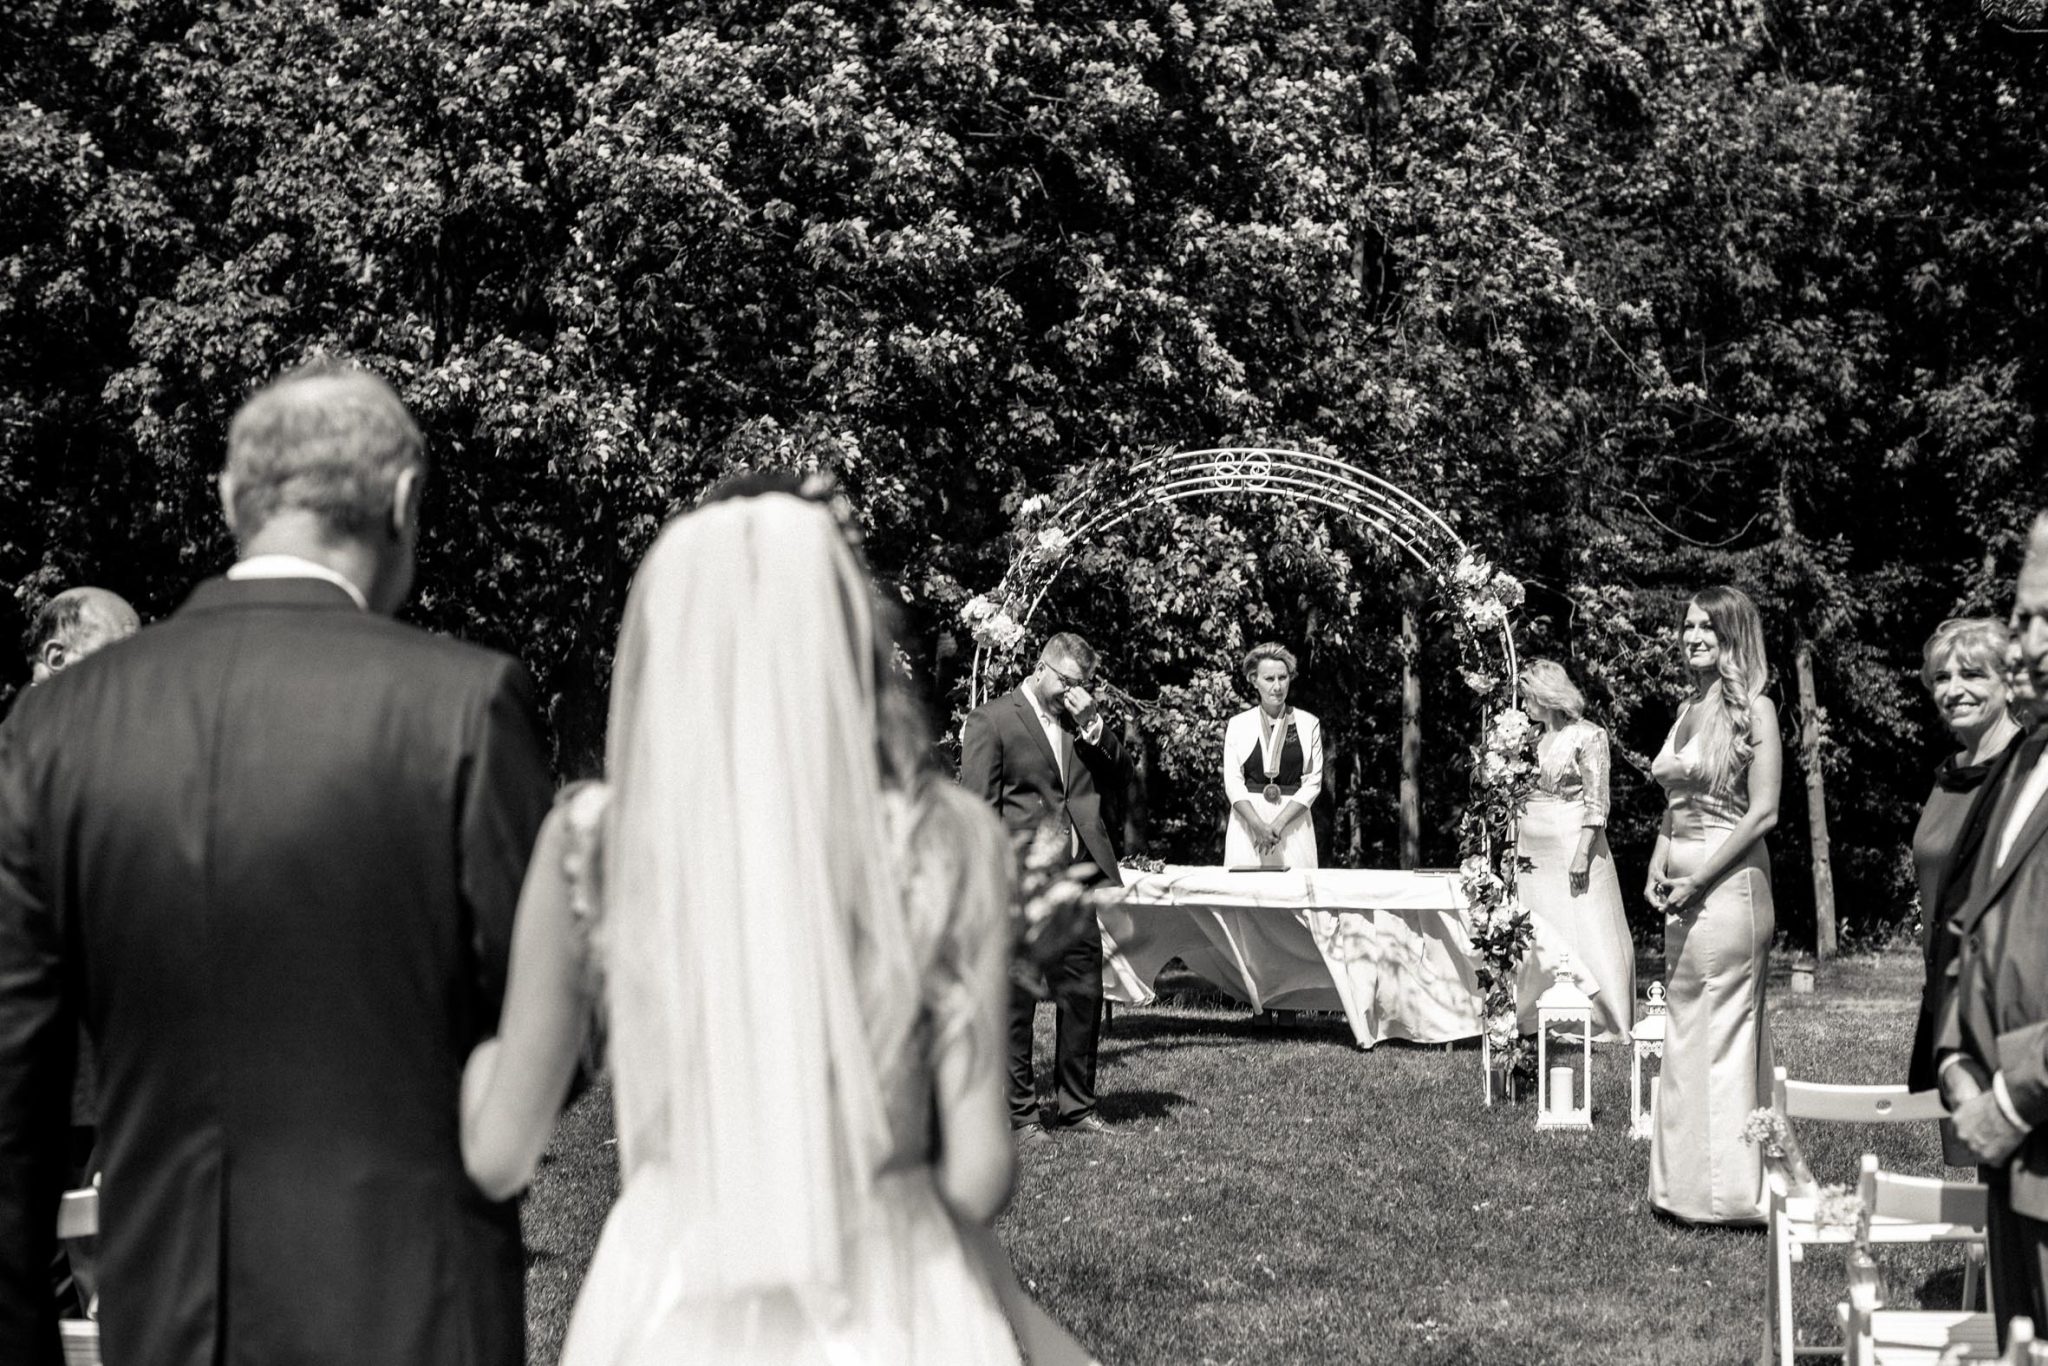 Sluncem zalitá svatba v přírodě, fotografie Daniel Nedeliak na blogu Originální Svatba